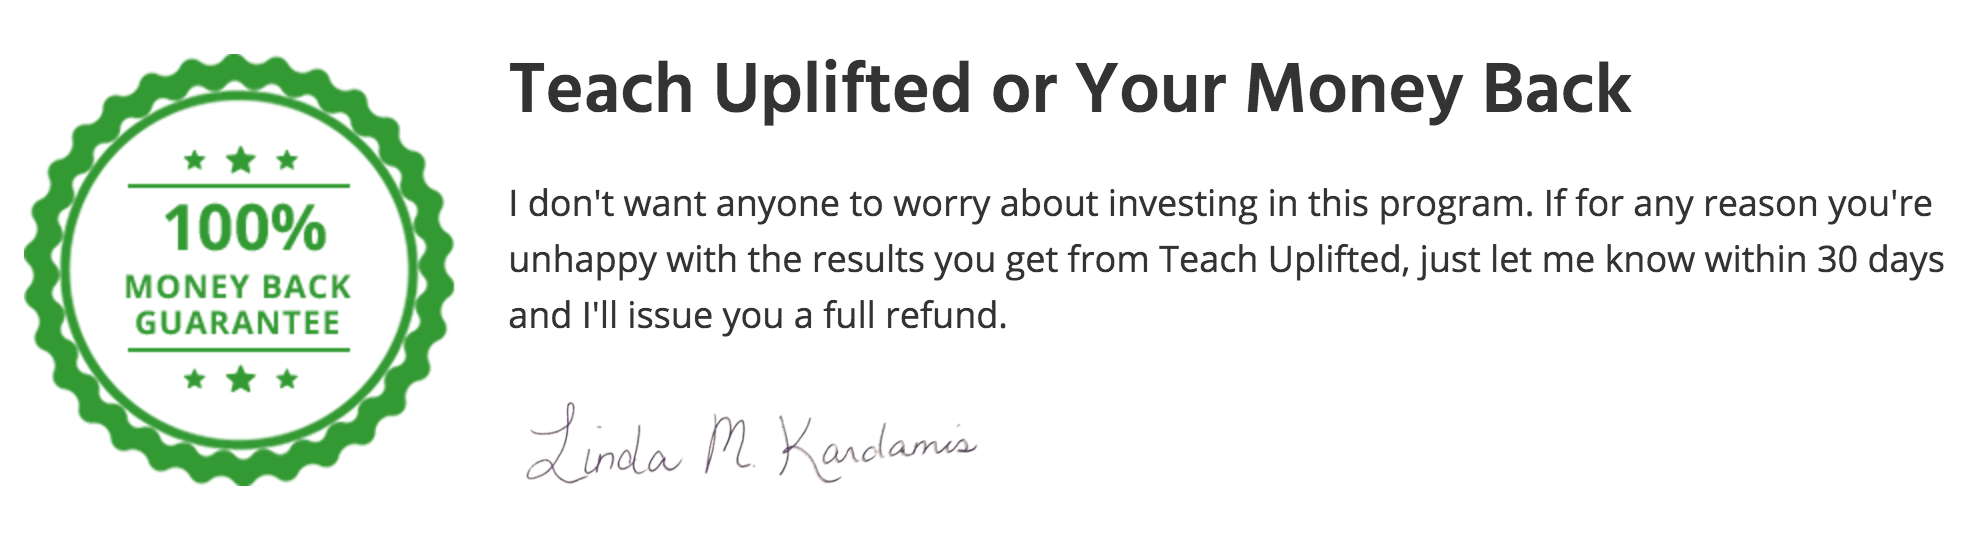 Teach Uplifted by Linda Kardamis